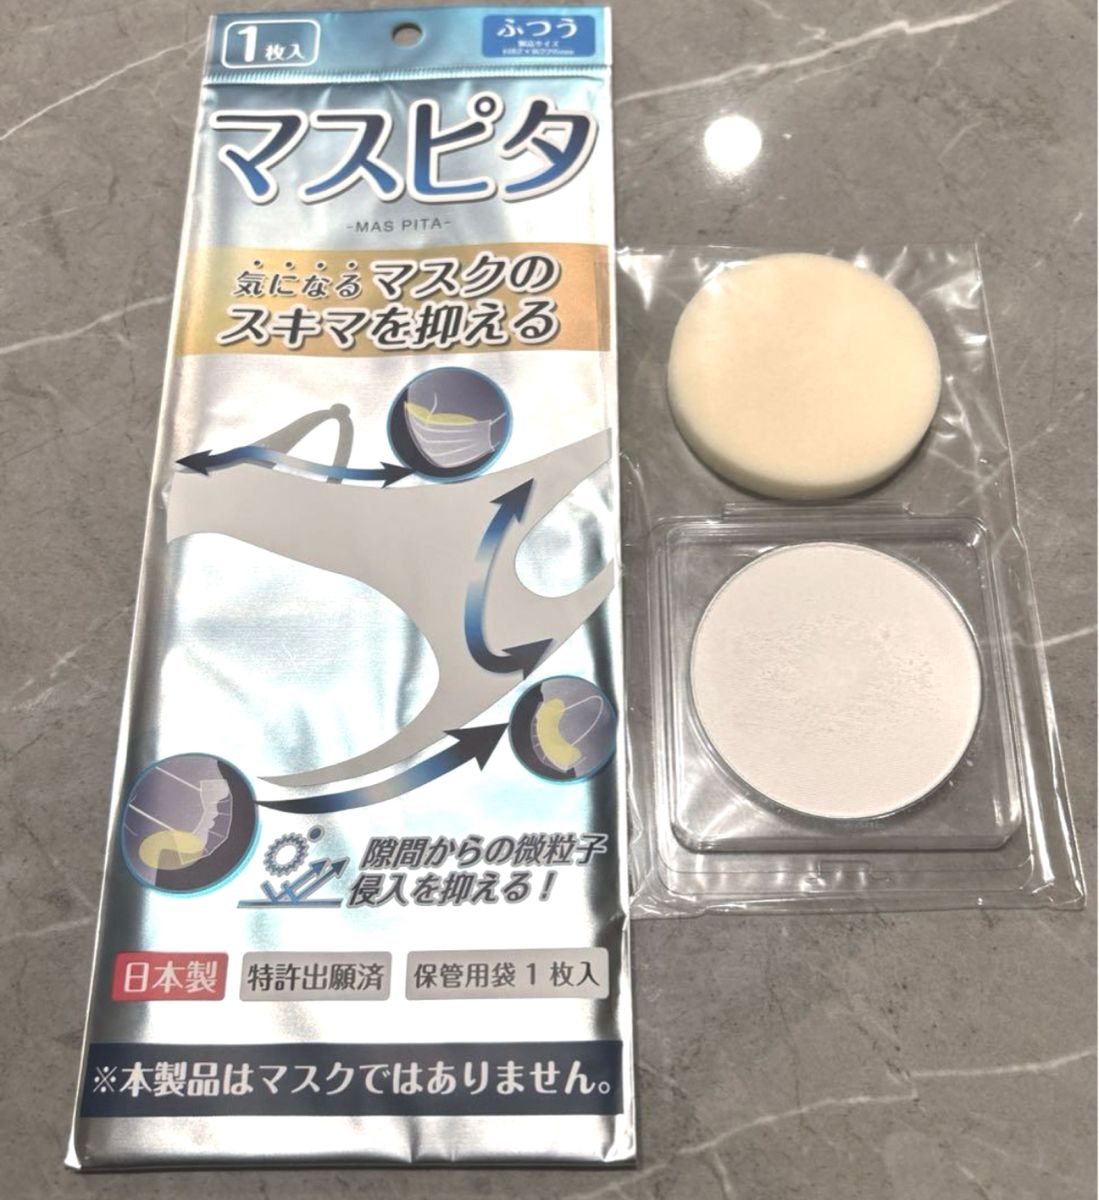 マスピタ ふつうサイズ マスクの隙間を埋める マスクカバー 飛沫 花粉 PM2.5 タナック 日本製 繰返使用 ゲル製 1枚入